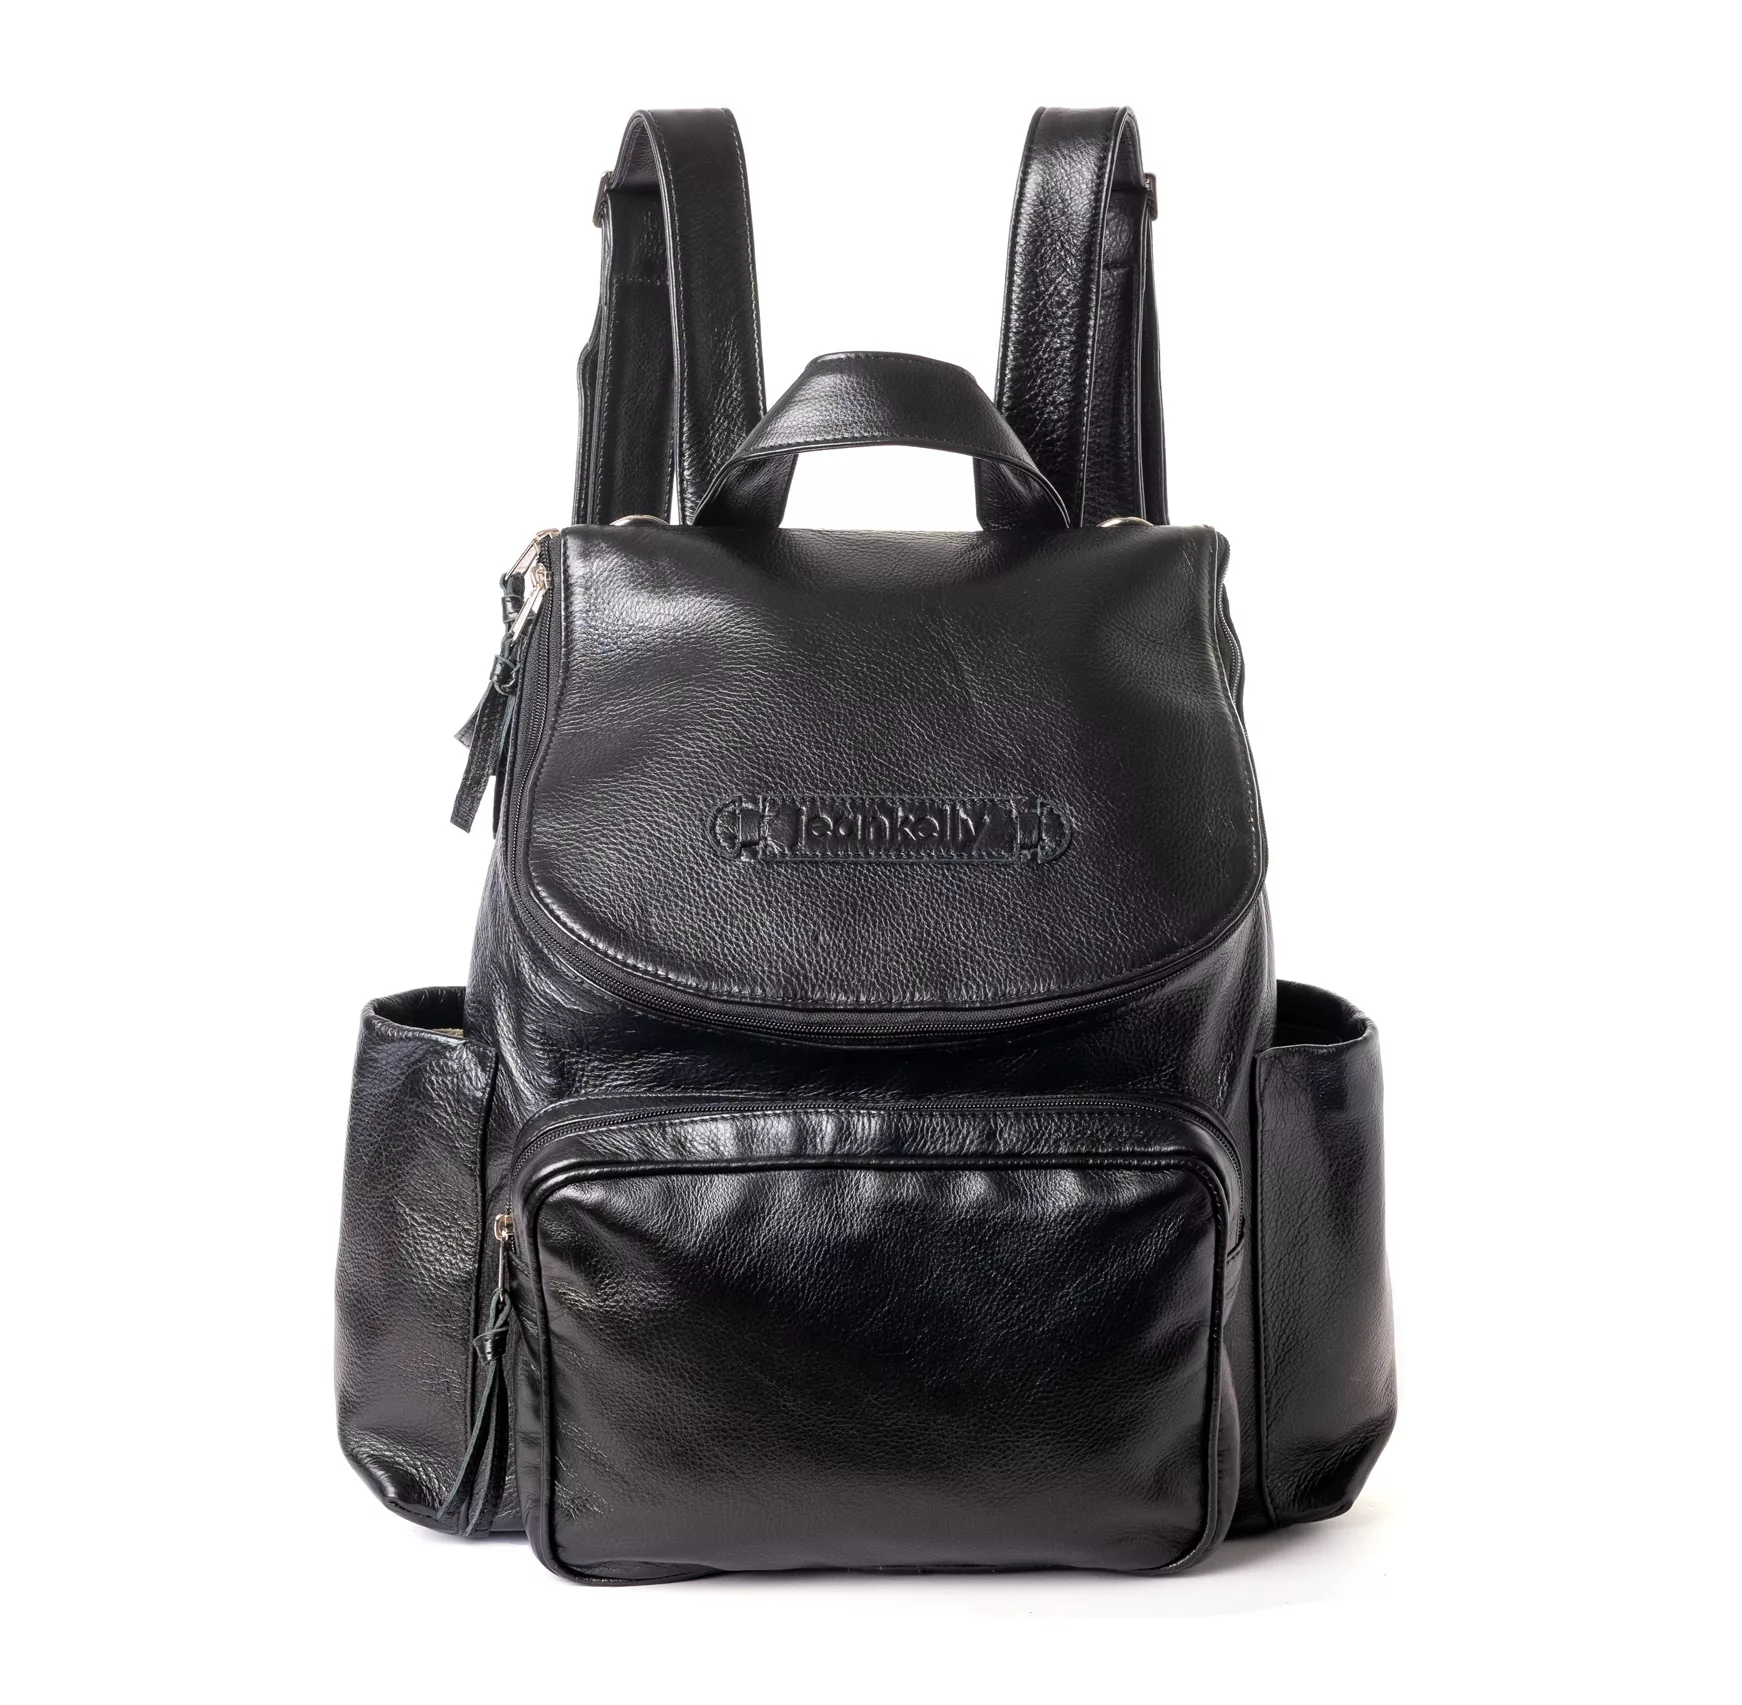 Women's Leather Backpack | Laptop Knapsack Bag Full Grain Quality | Love 41